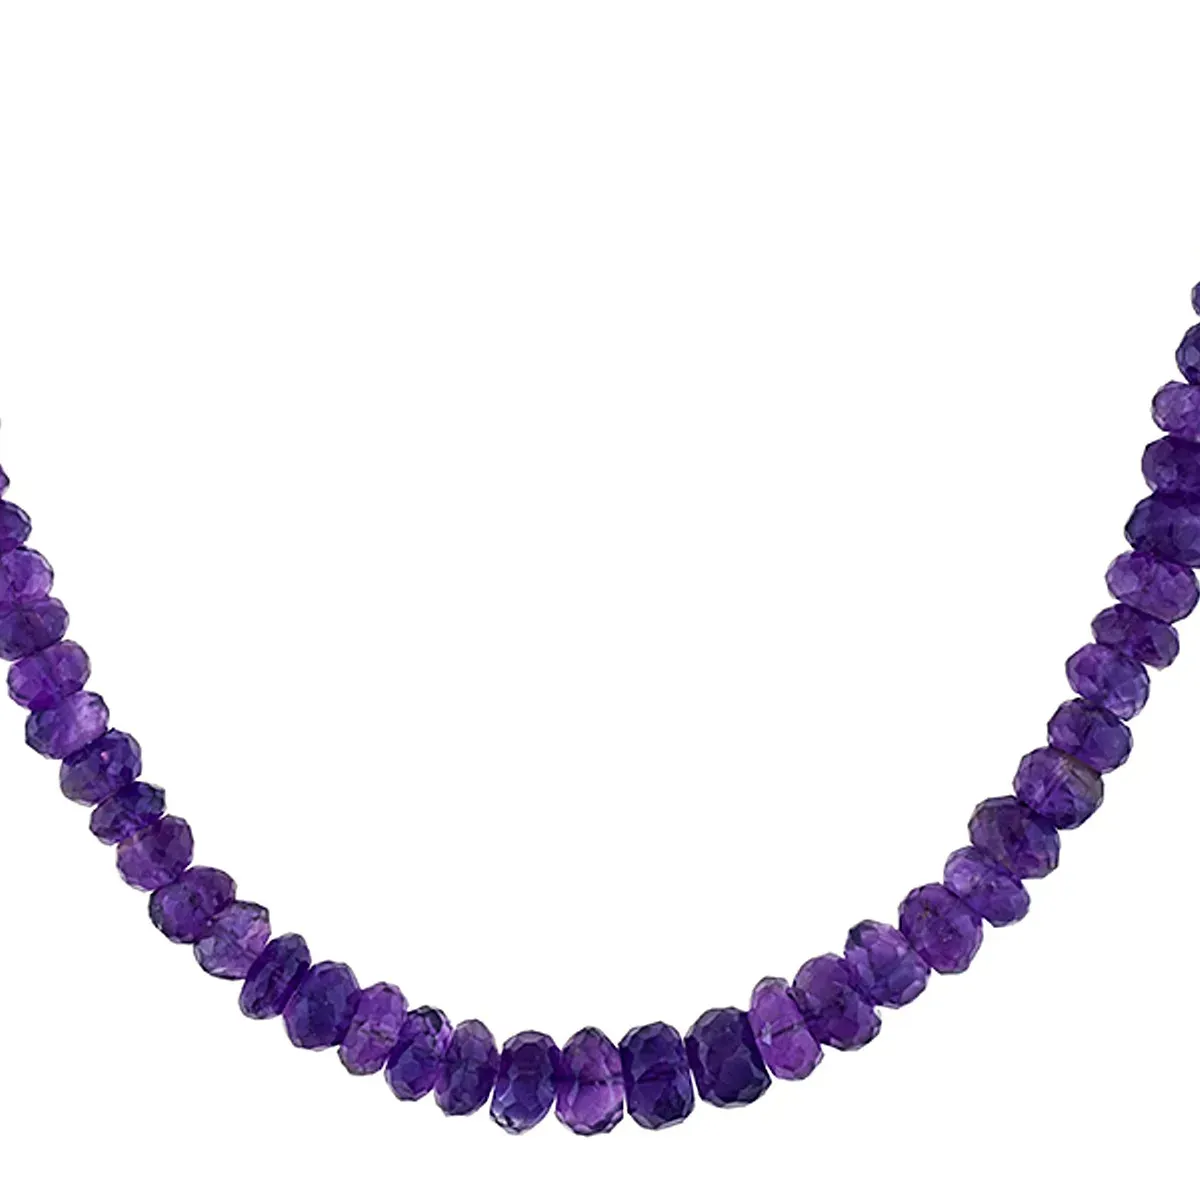 Collier en argent rhodié avec perle d'améthyste africaine violette: bijoux élégants, argent 925, accent de pierres précieuses, accessoire de mode pour femme